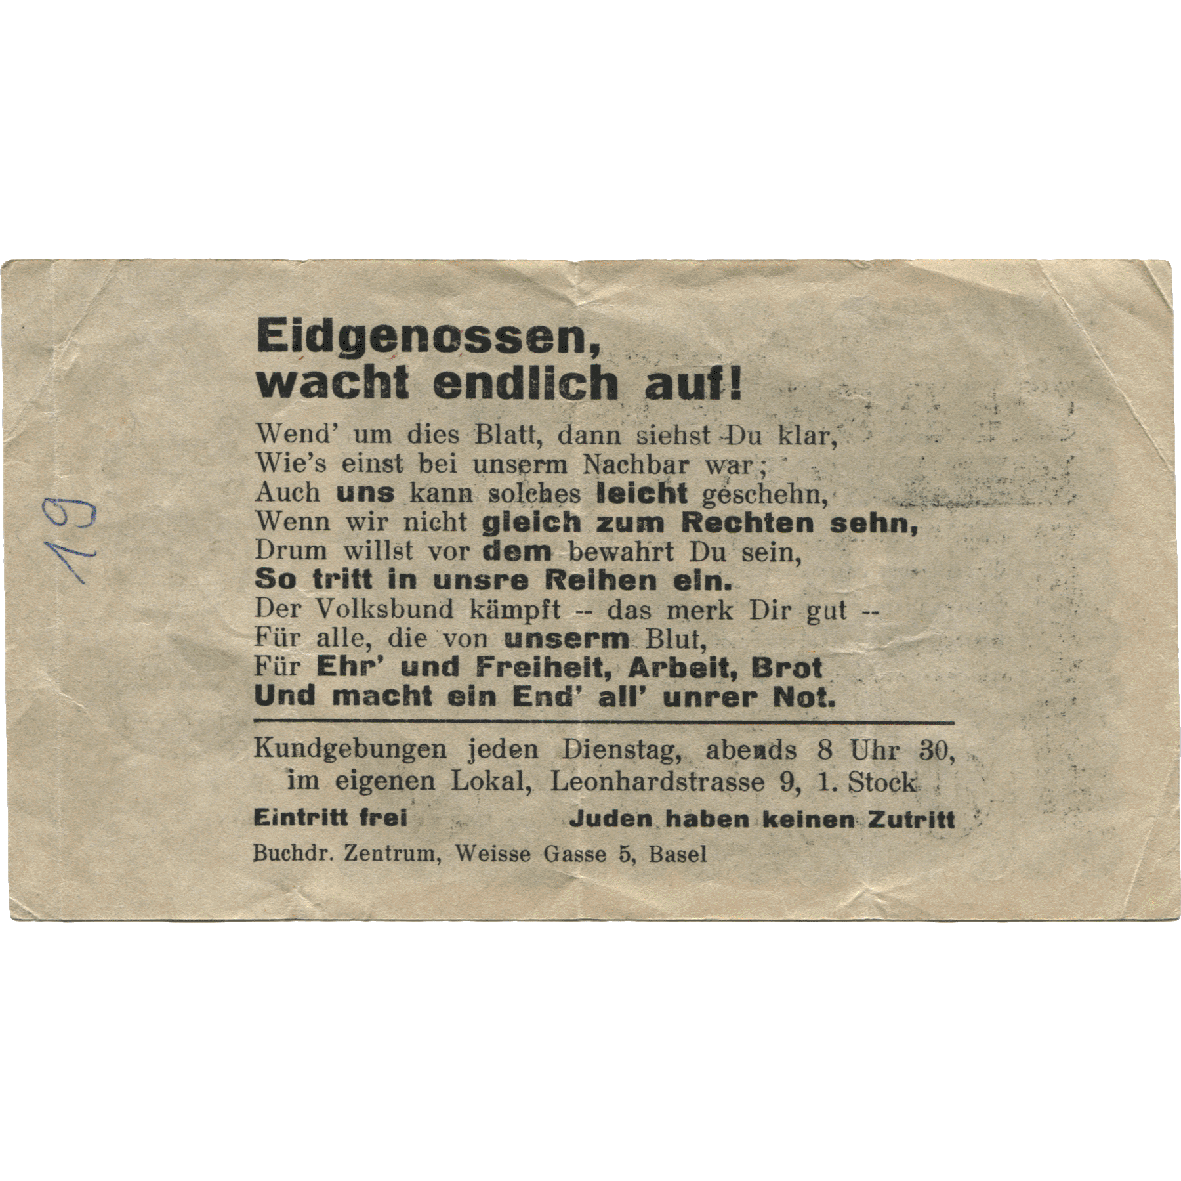 Schweizerische Eidgenossenschaft, Nationalsozialistische Schweizer Arbeiterpartei, Propagandaschein «100 Millionen Mark» (reverse)